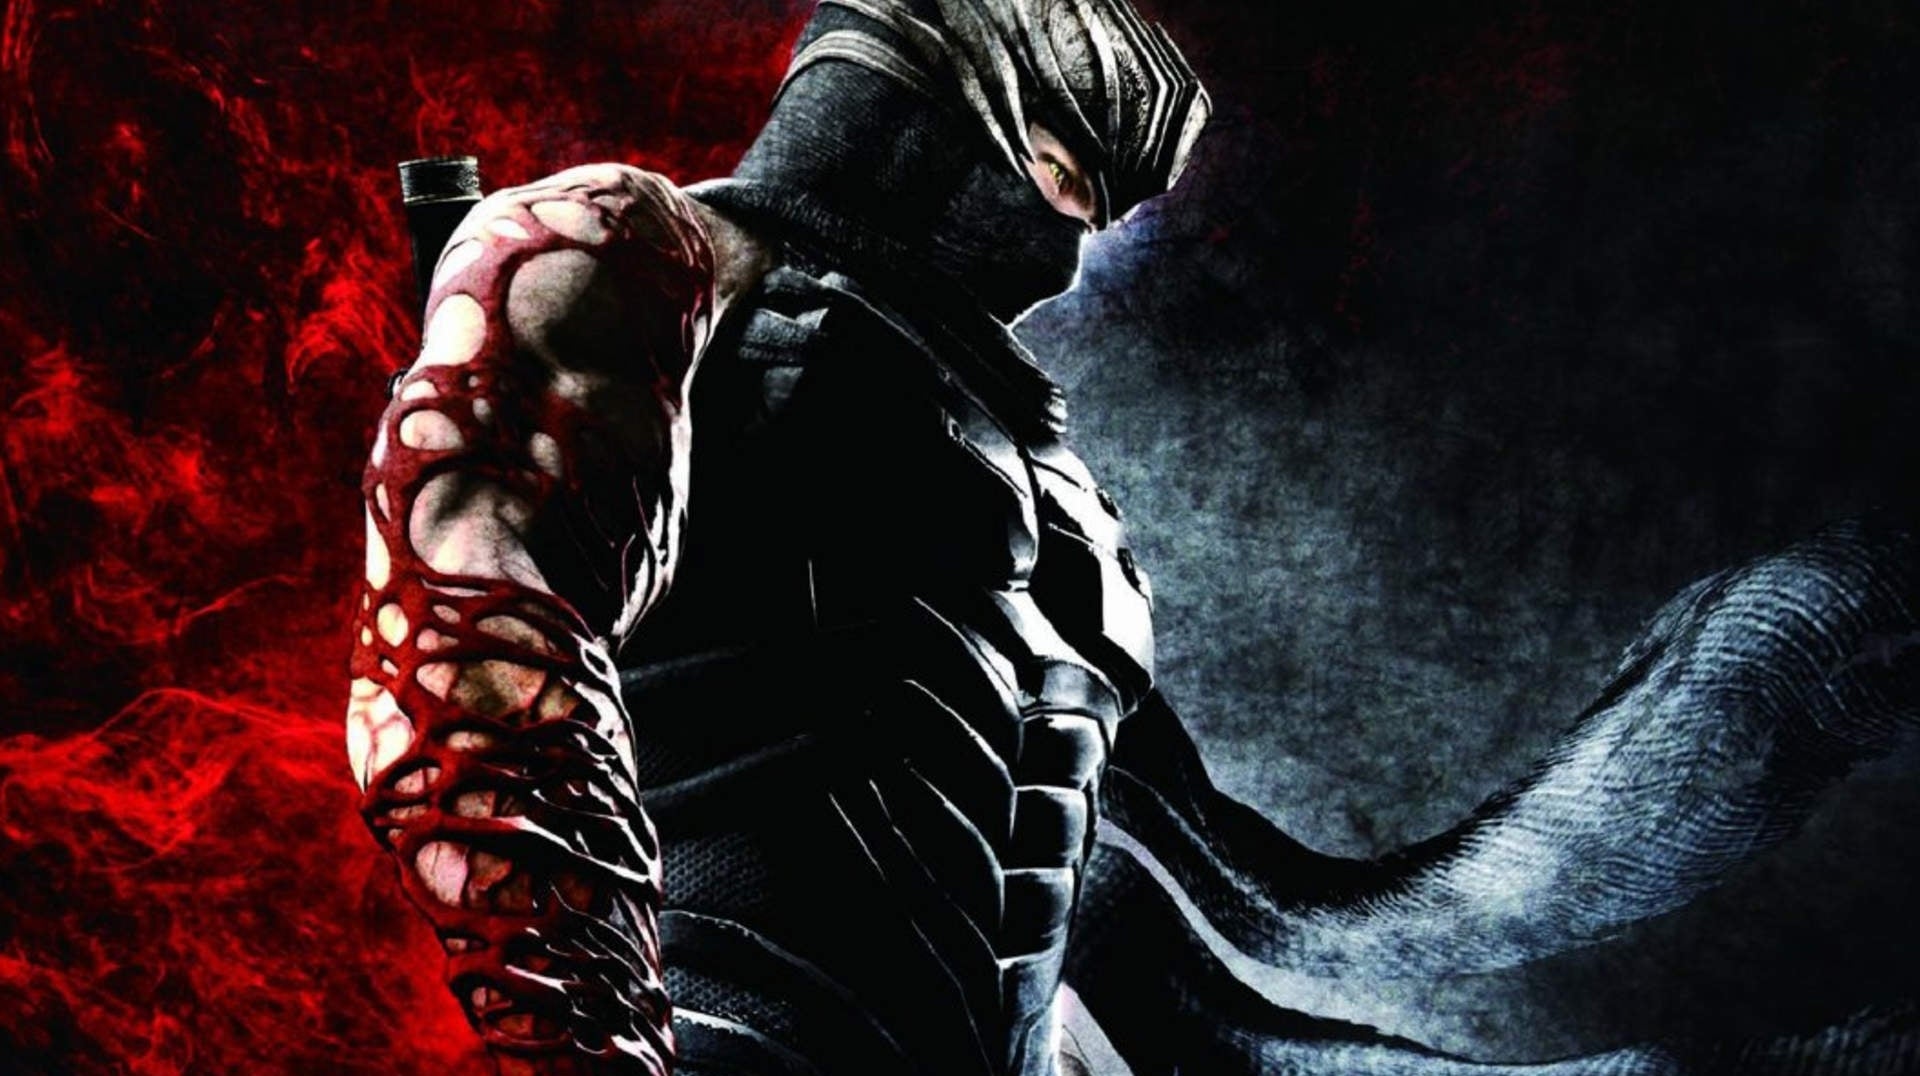 Immagine di Ninja Gaiden: Master Collection porta l'iconica serie action su Switch. Trailer e data di uscita